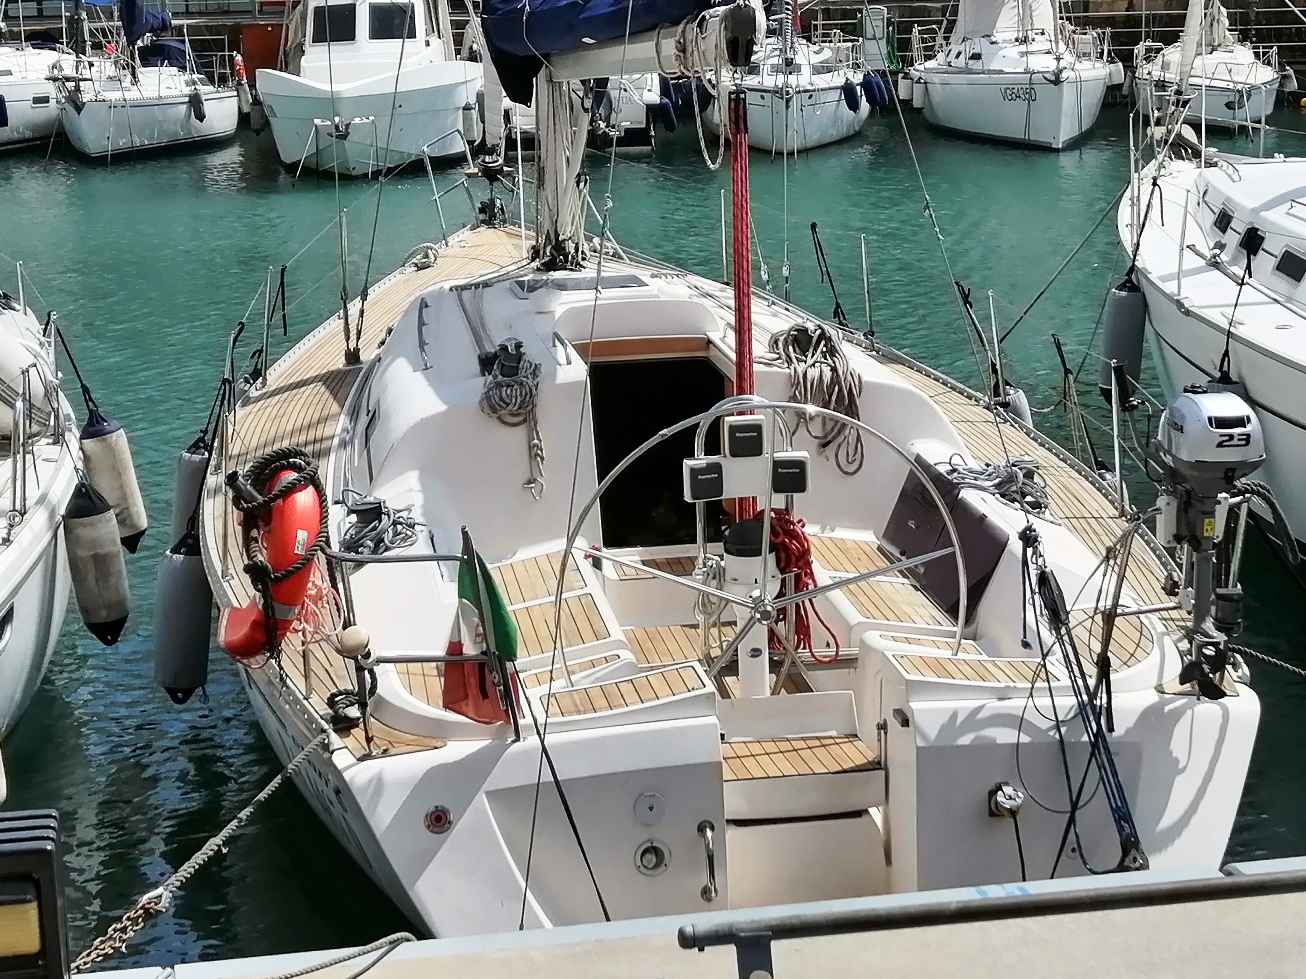 Elan 40 - Yacht Charter Genova & Boat hire in Italy Italian Riviera Genova Marina di Porto Antico 1